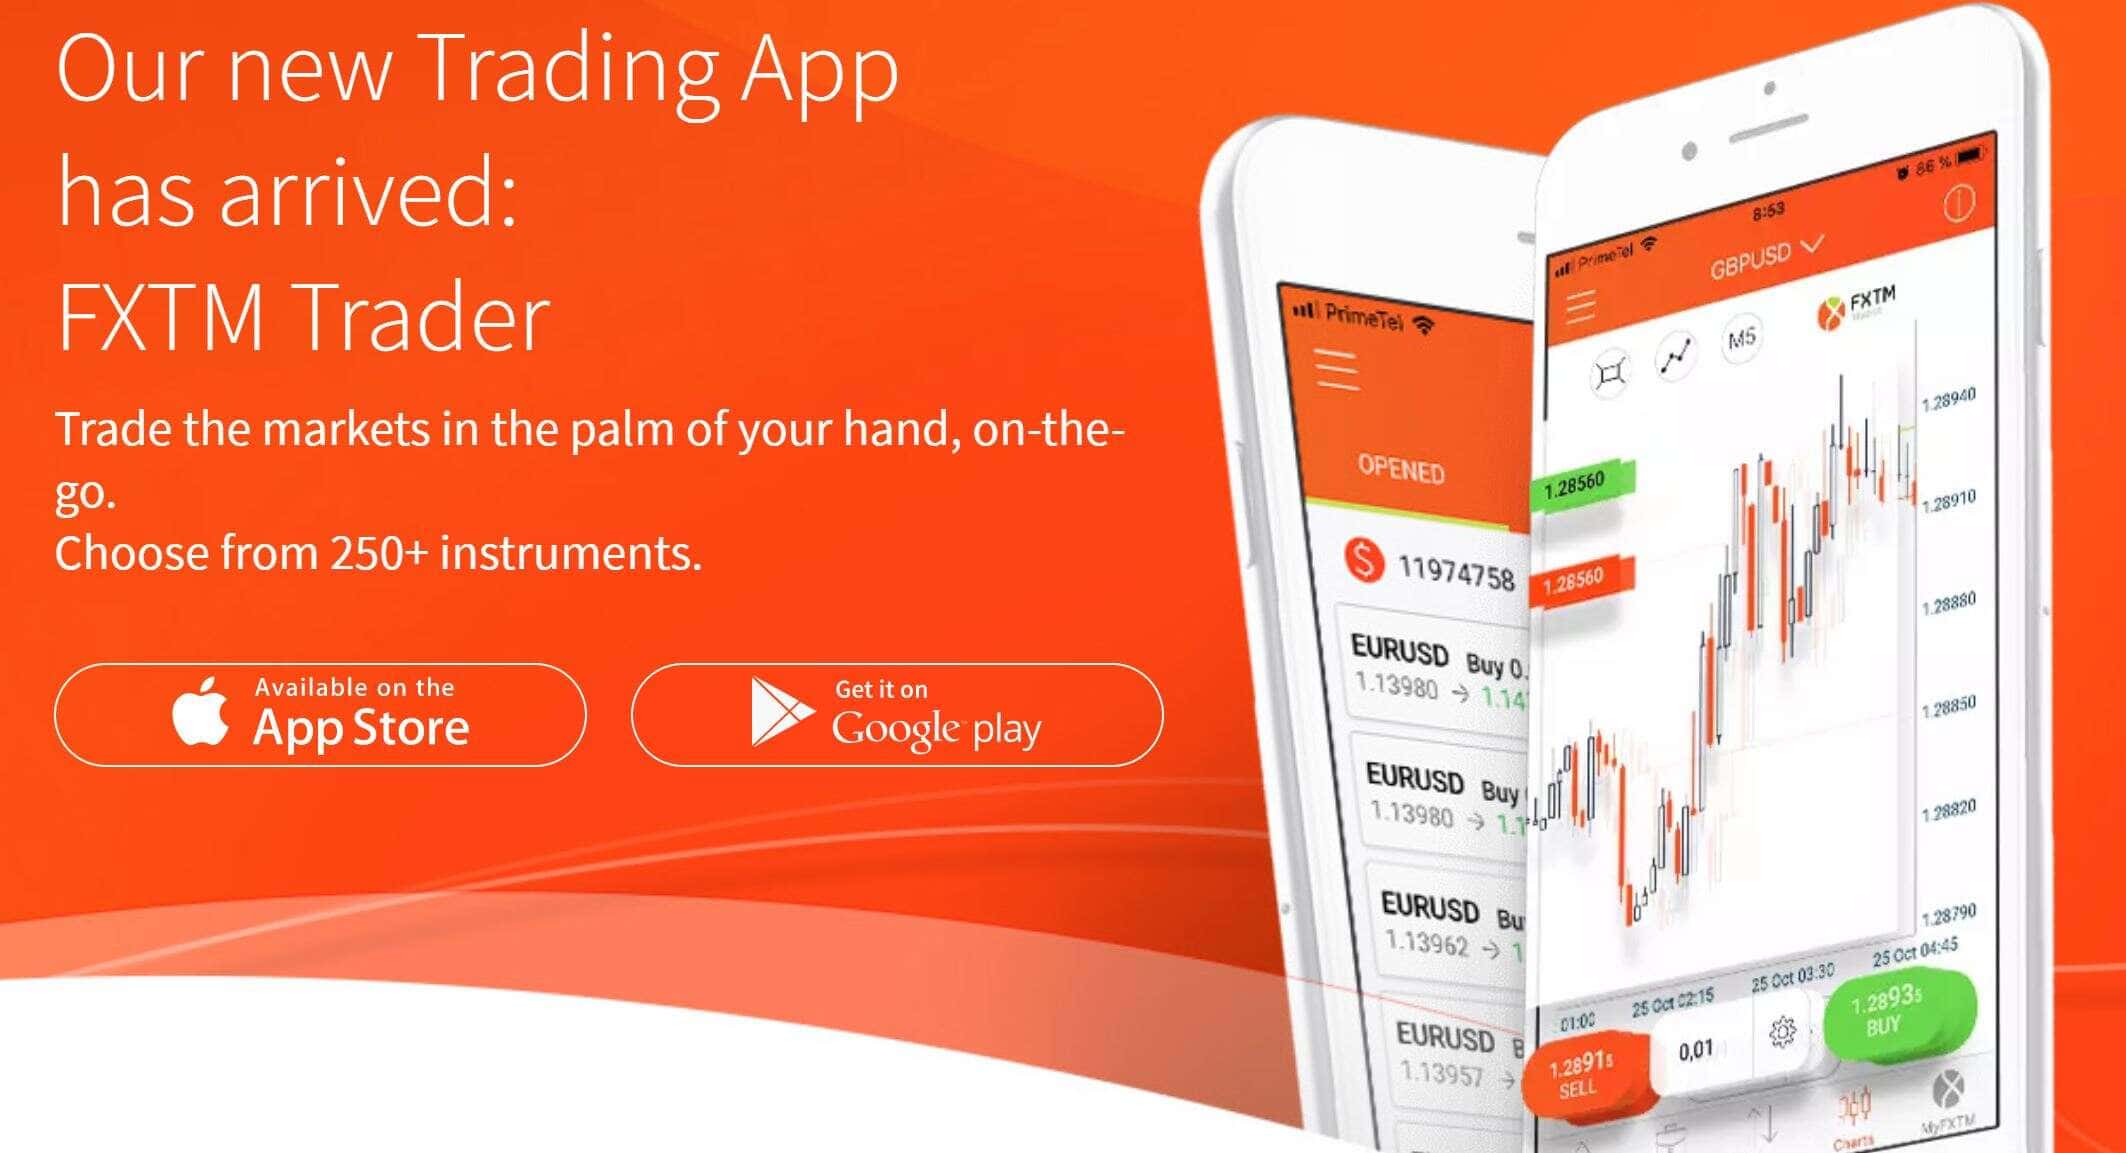 FXTM Trader app